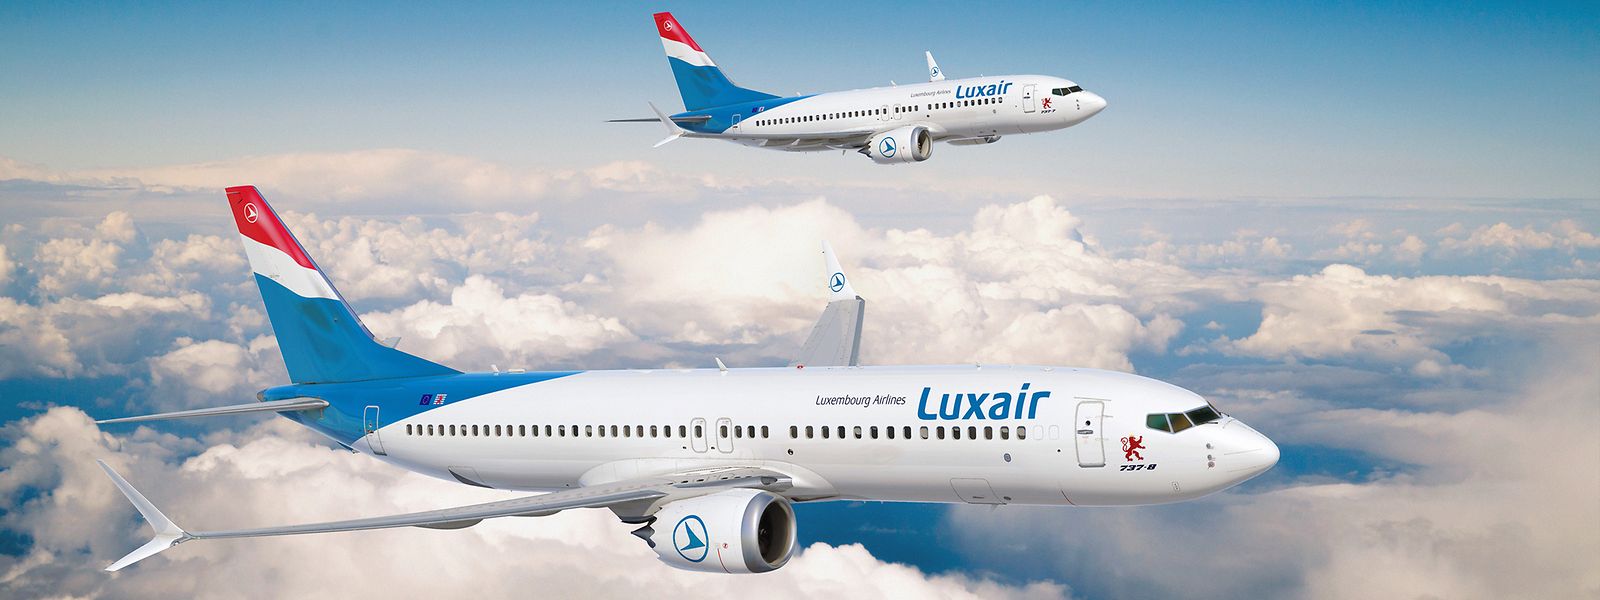 Luxair will die Maschinen vor allem für die längeren Flüge im Portfolio einsetzen.